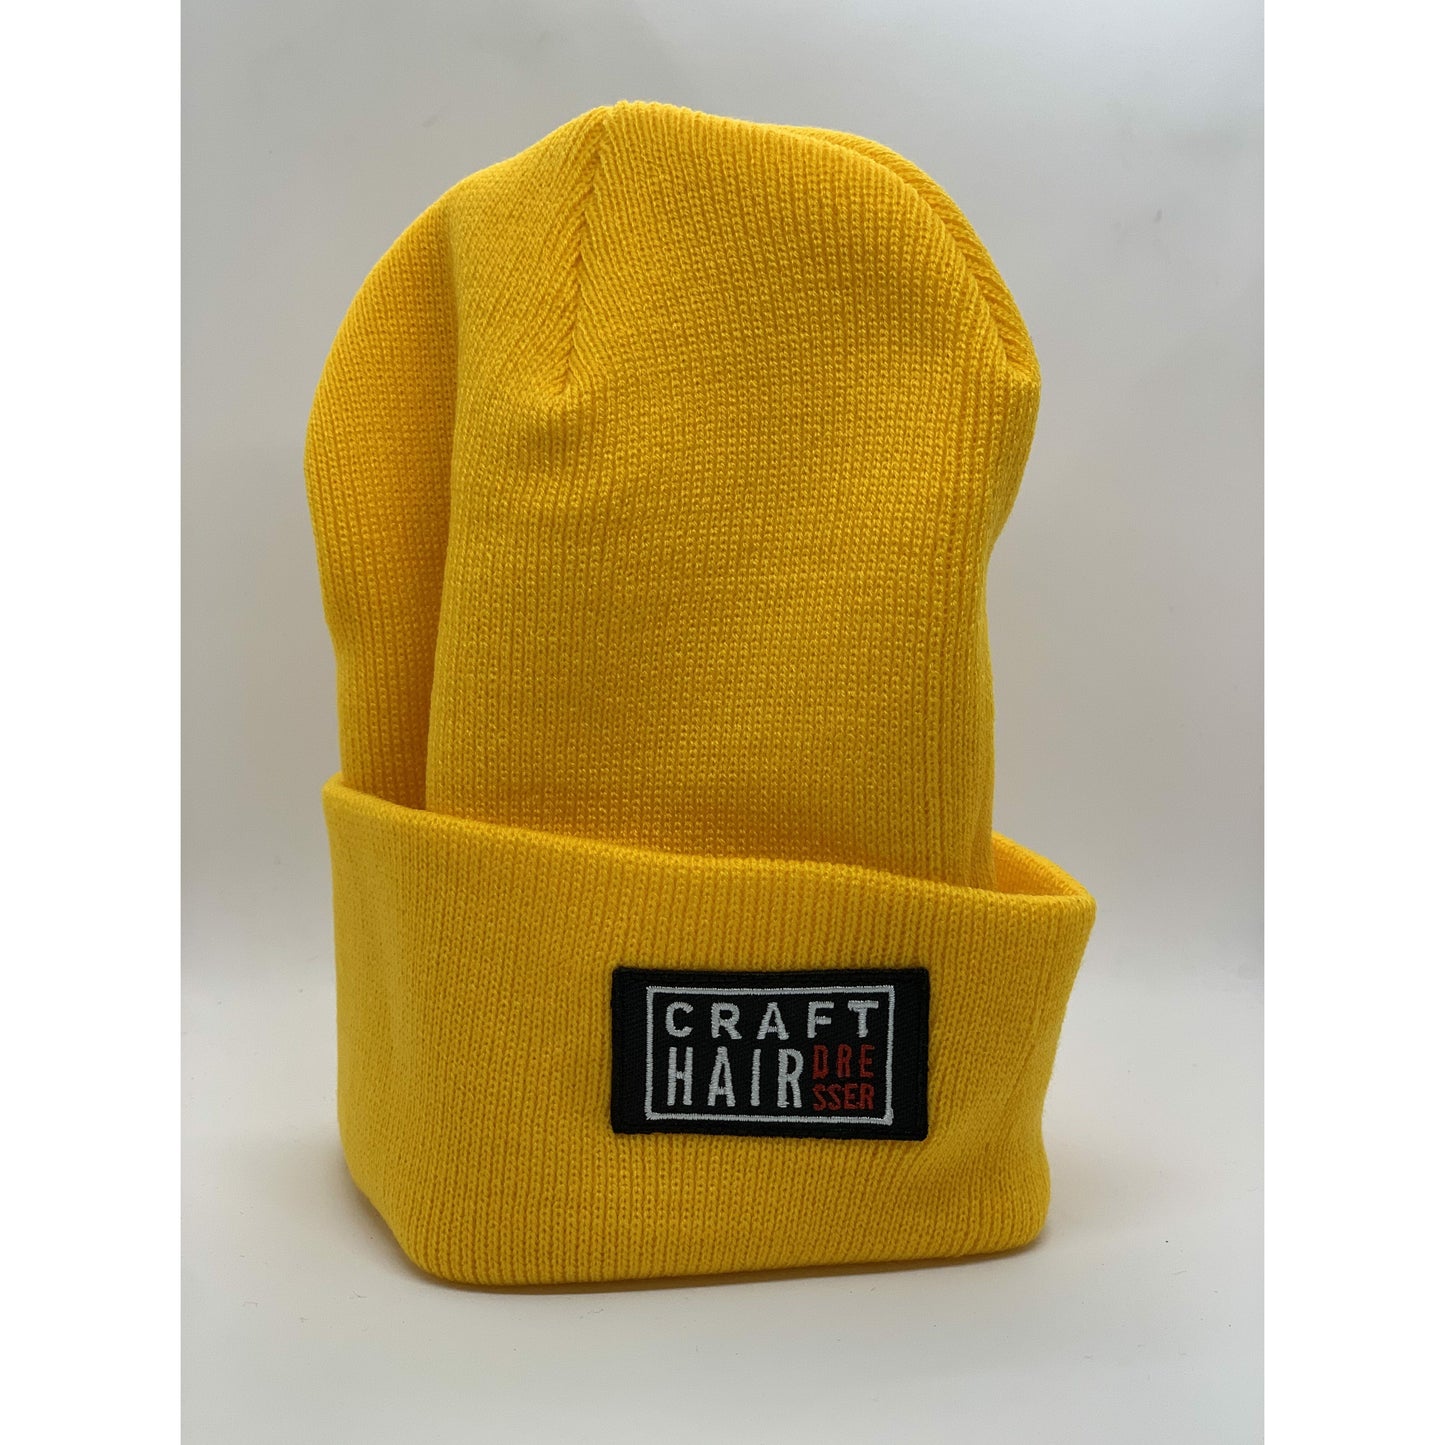 
                  
                    CraftHairdresser Beanie apparel Hairbrained Mustard Yellow 
                  
                